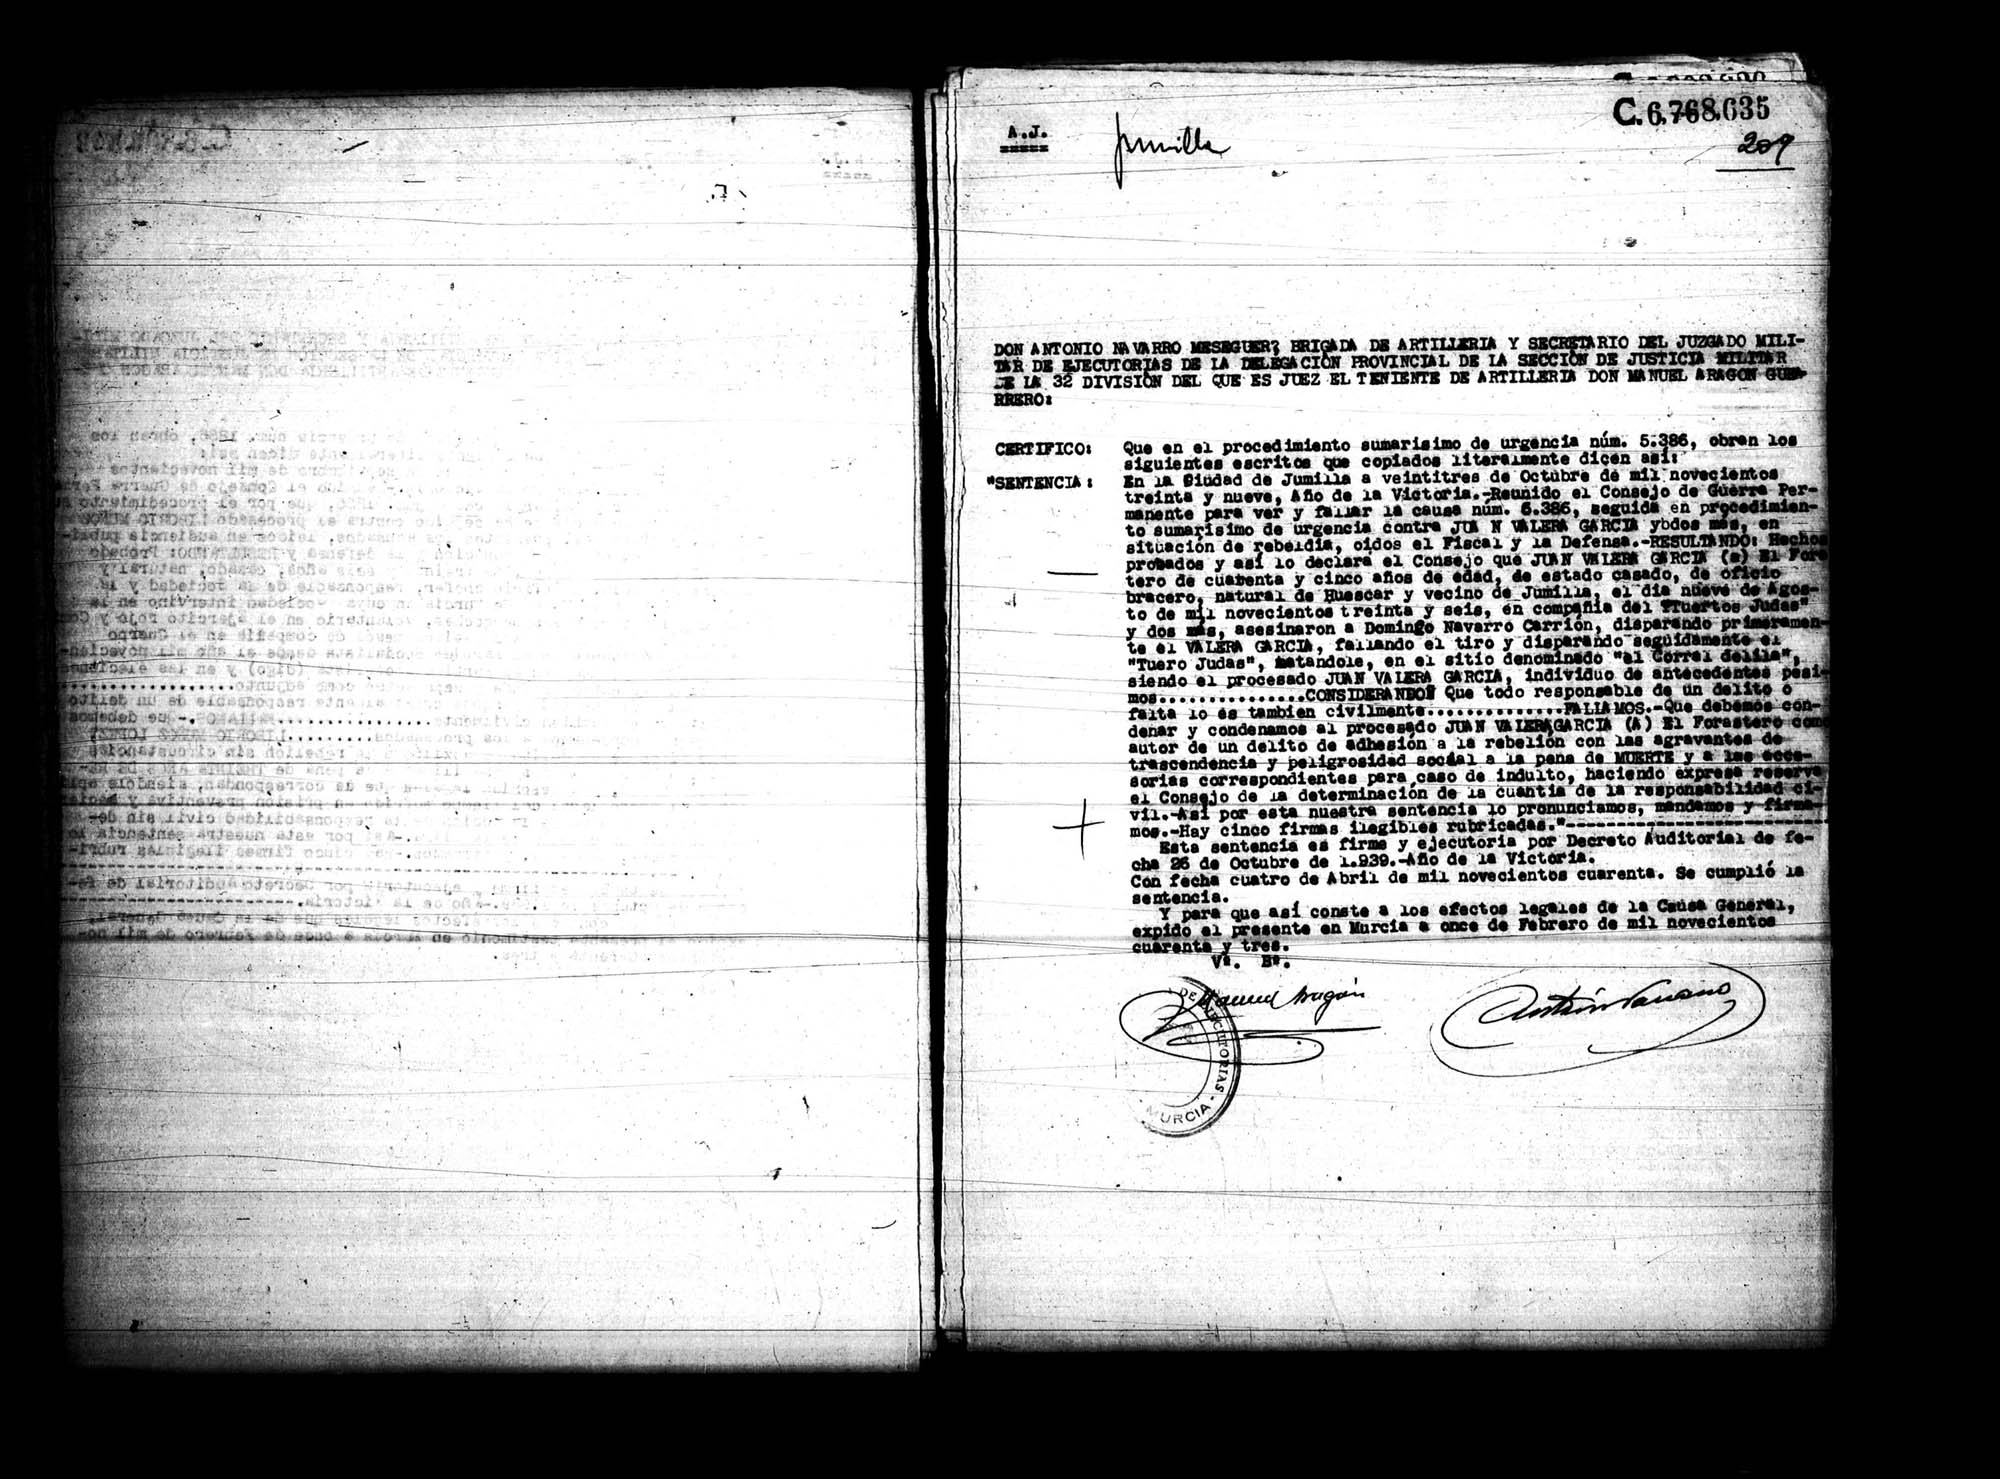 Certificado de la sentencia pronunciada contra Juan Valera García, causa 5386, el 23 de octubre de 1939 en Jumilla.